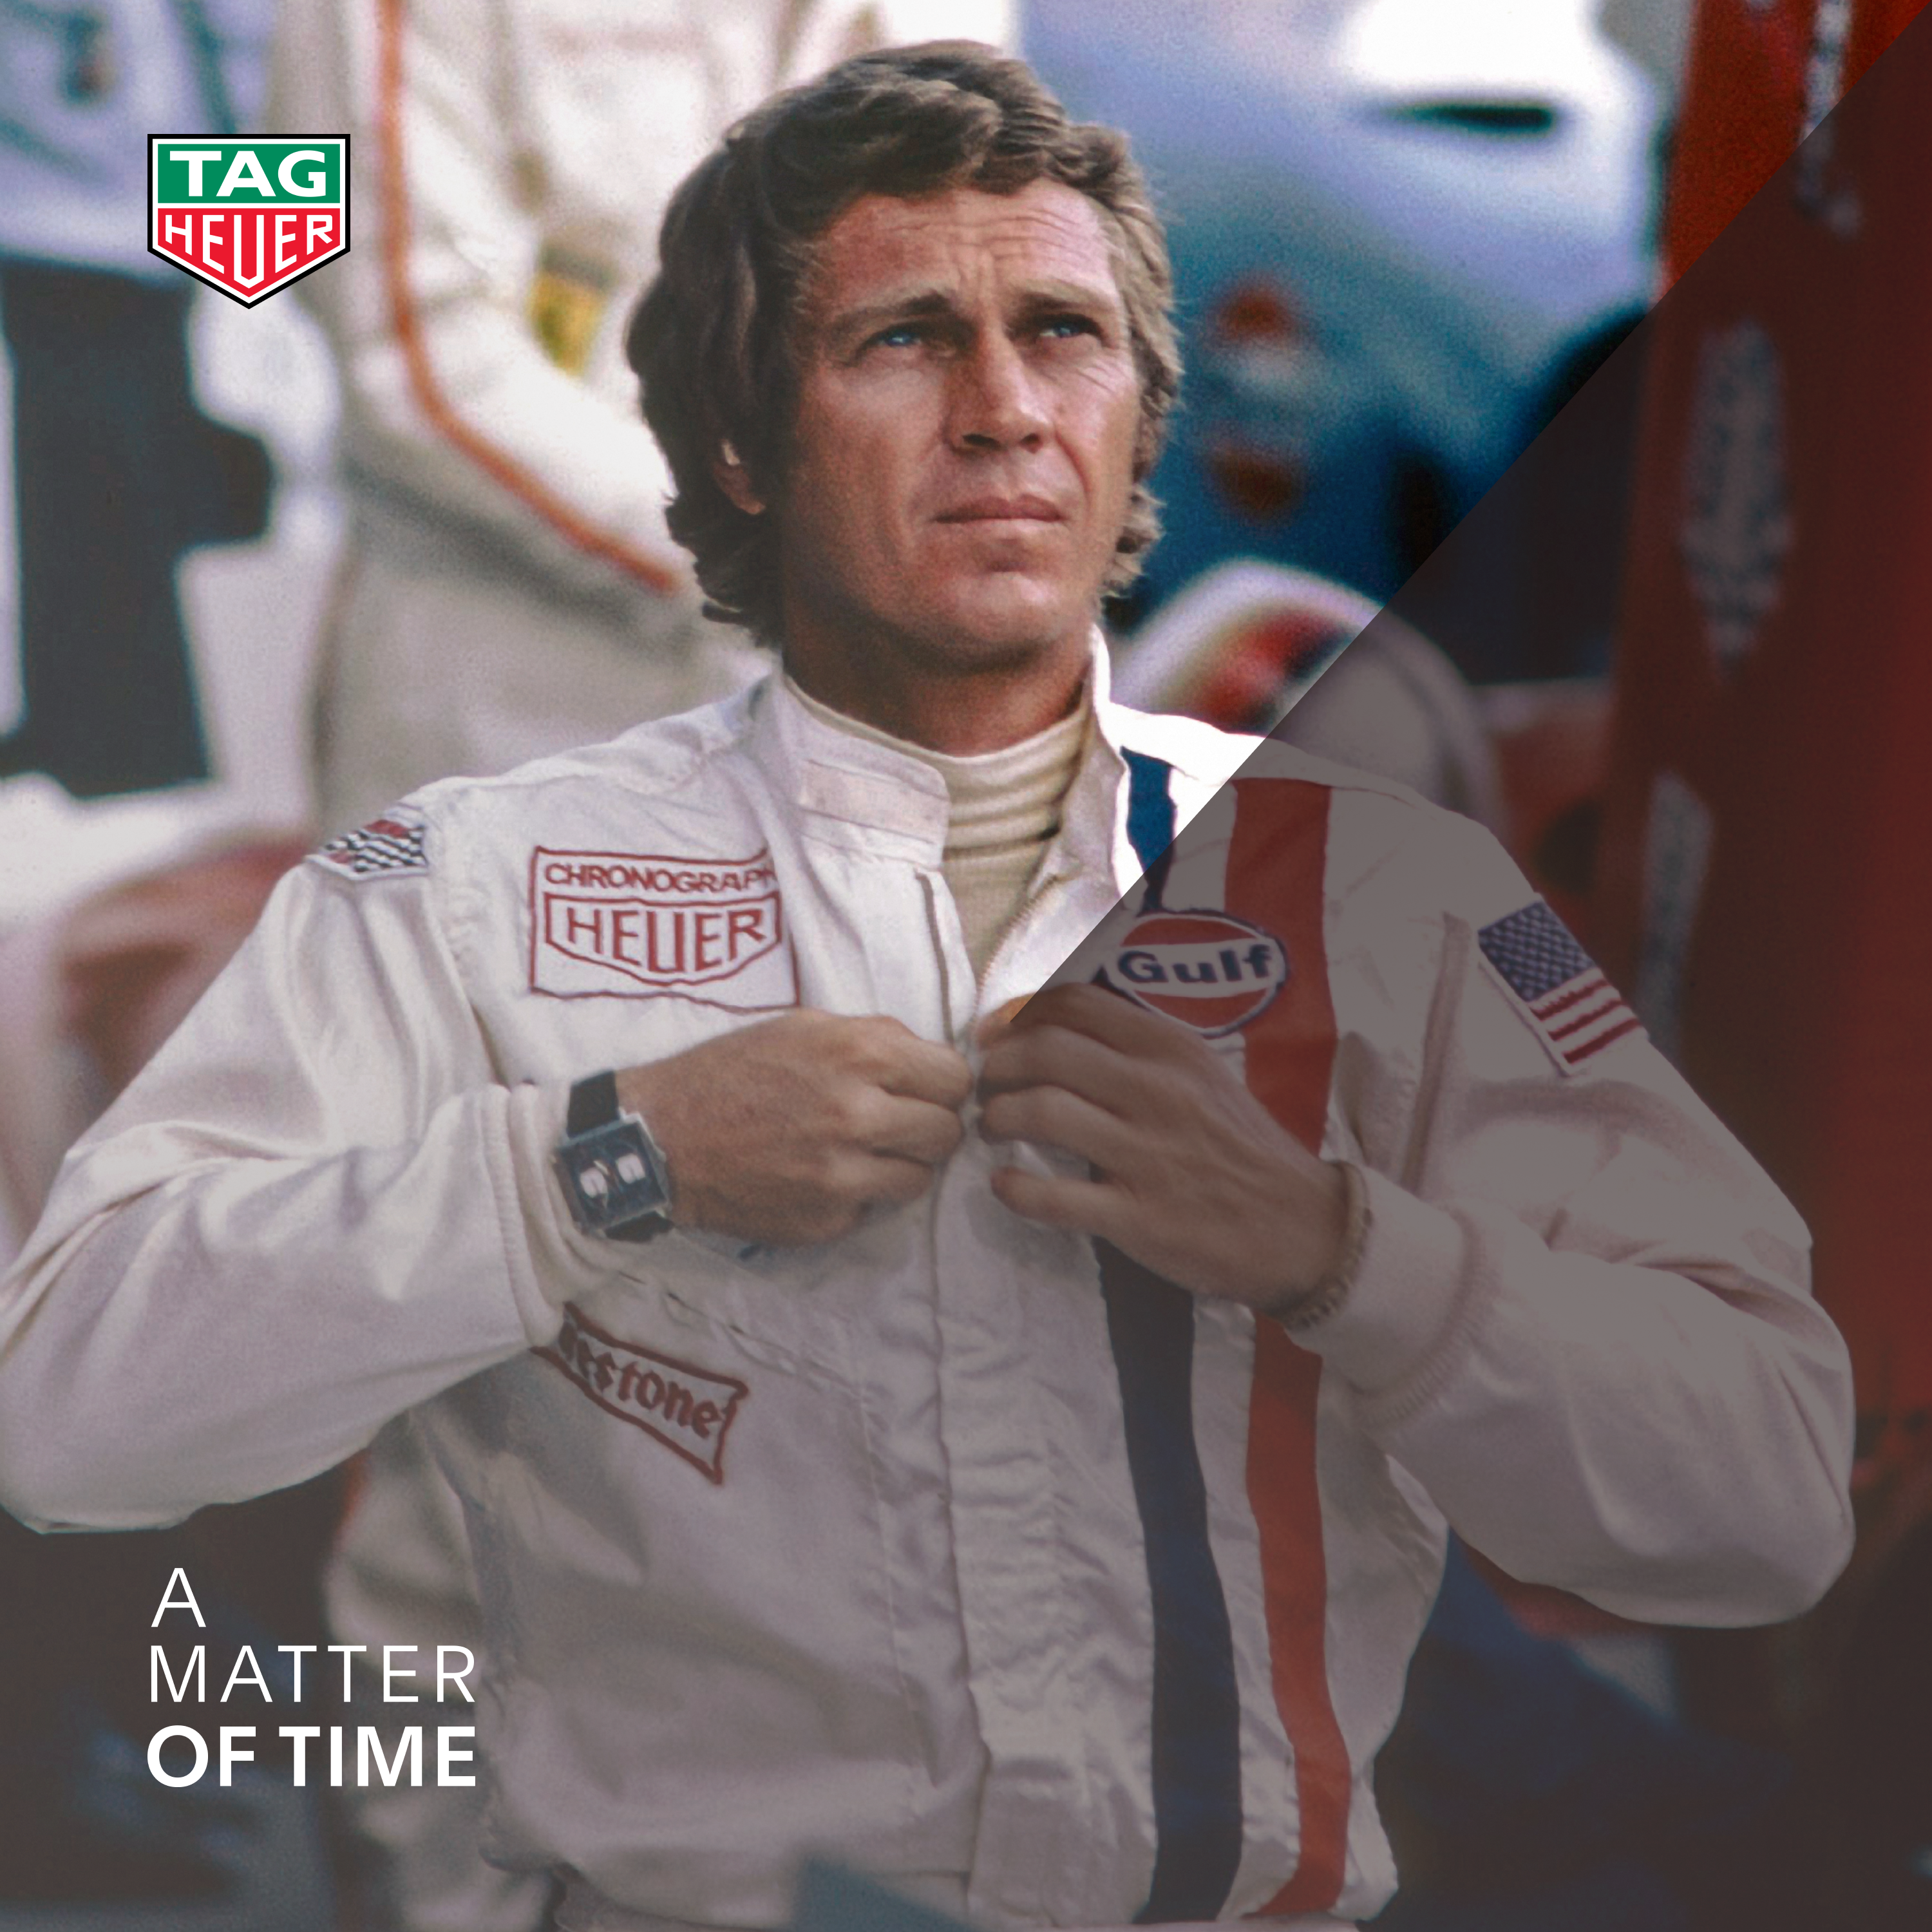 1971: When McQueen met the Monaco